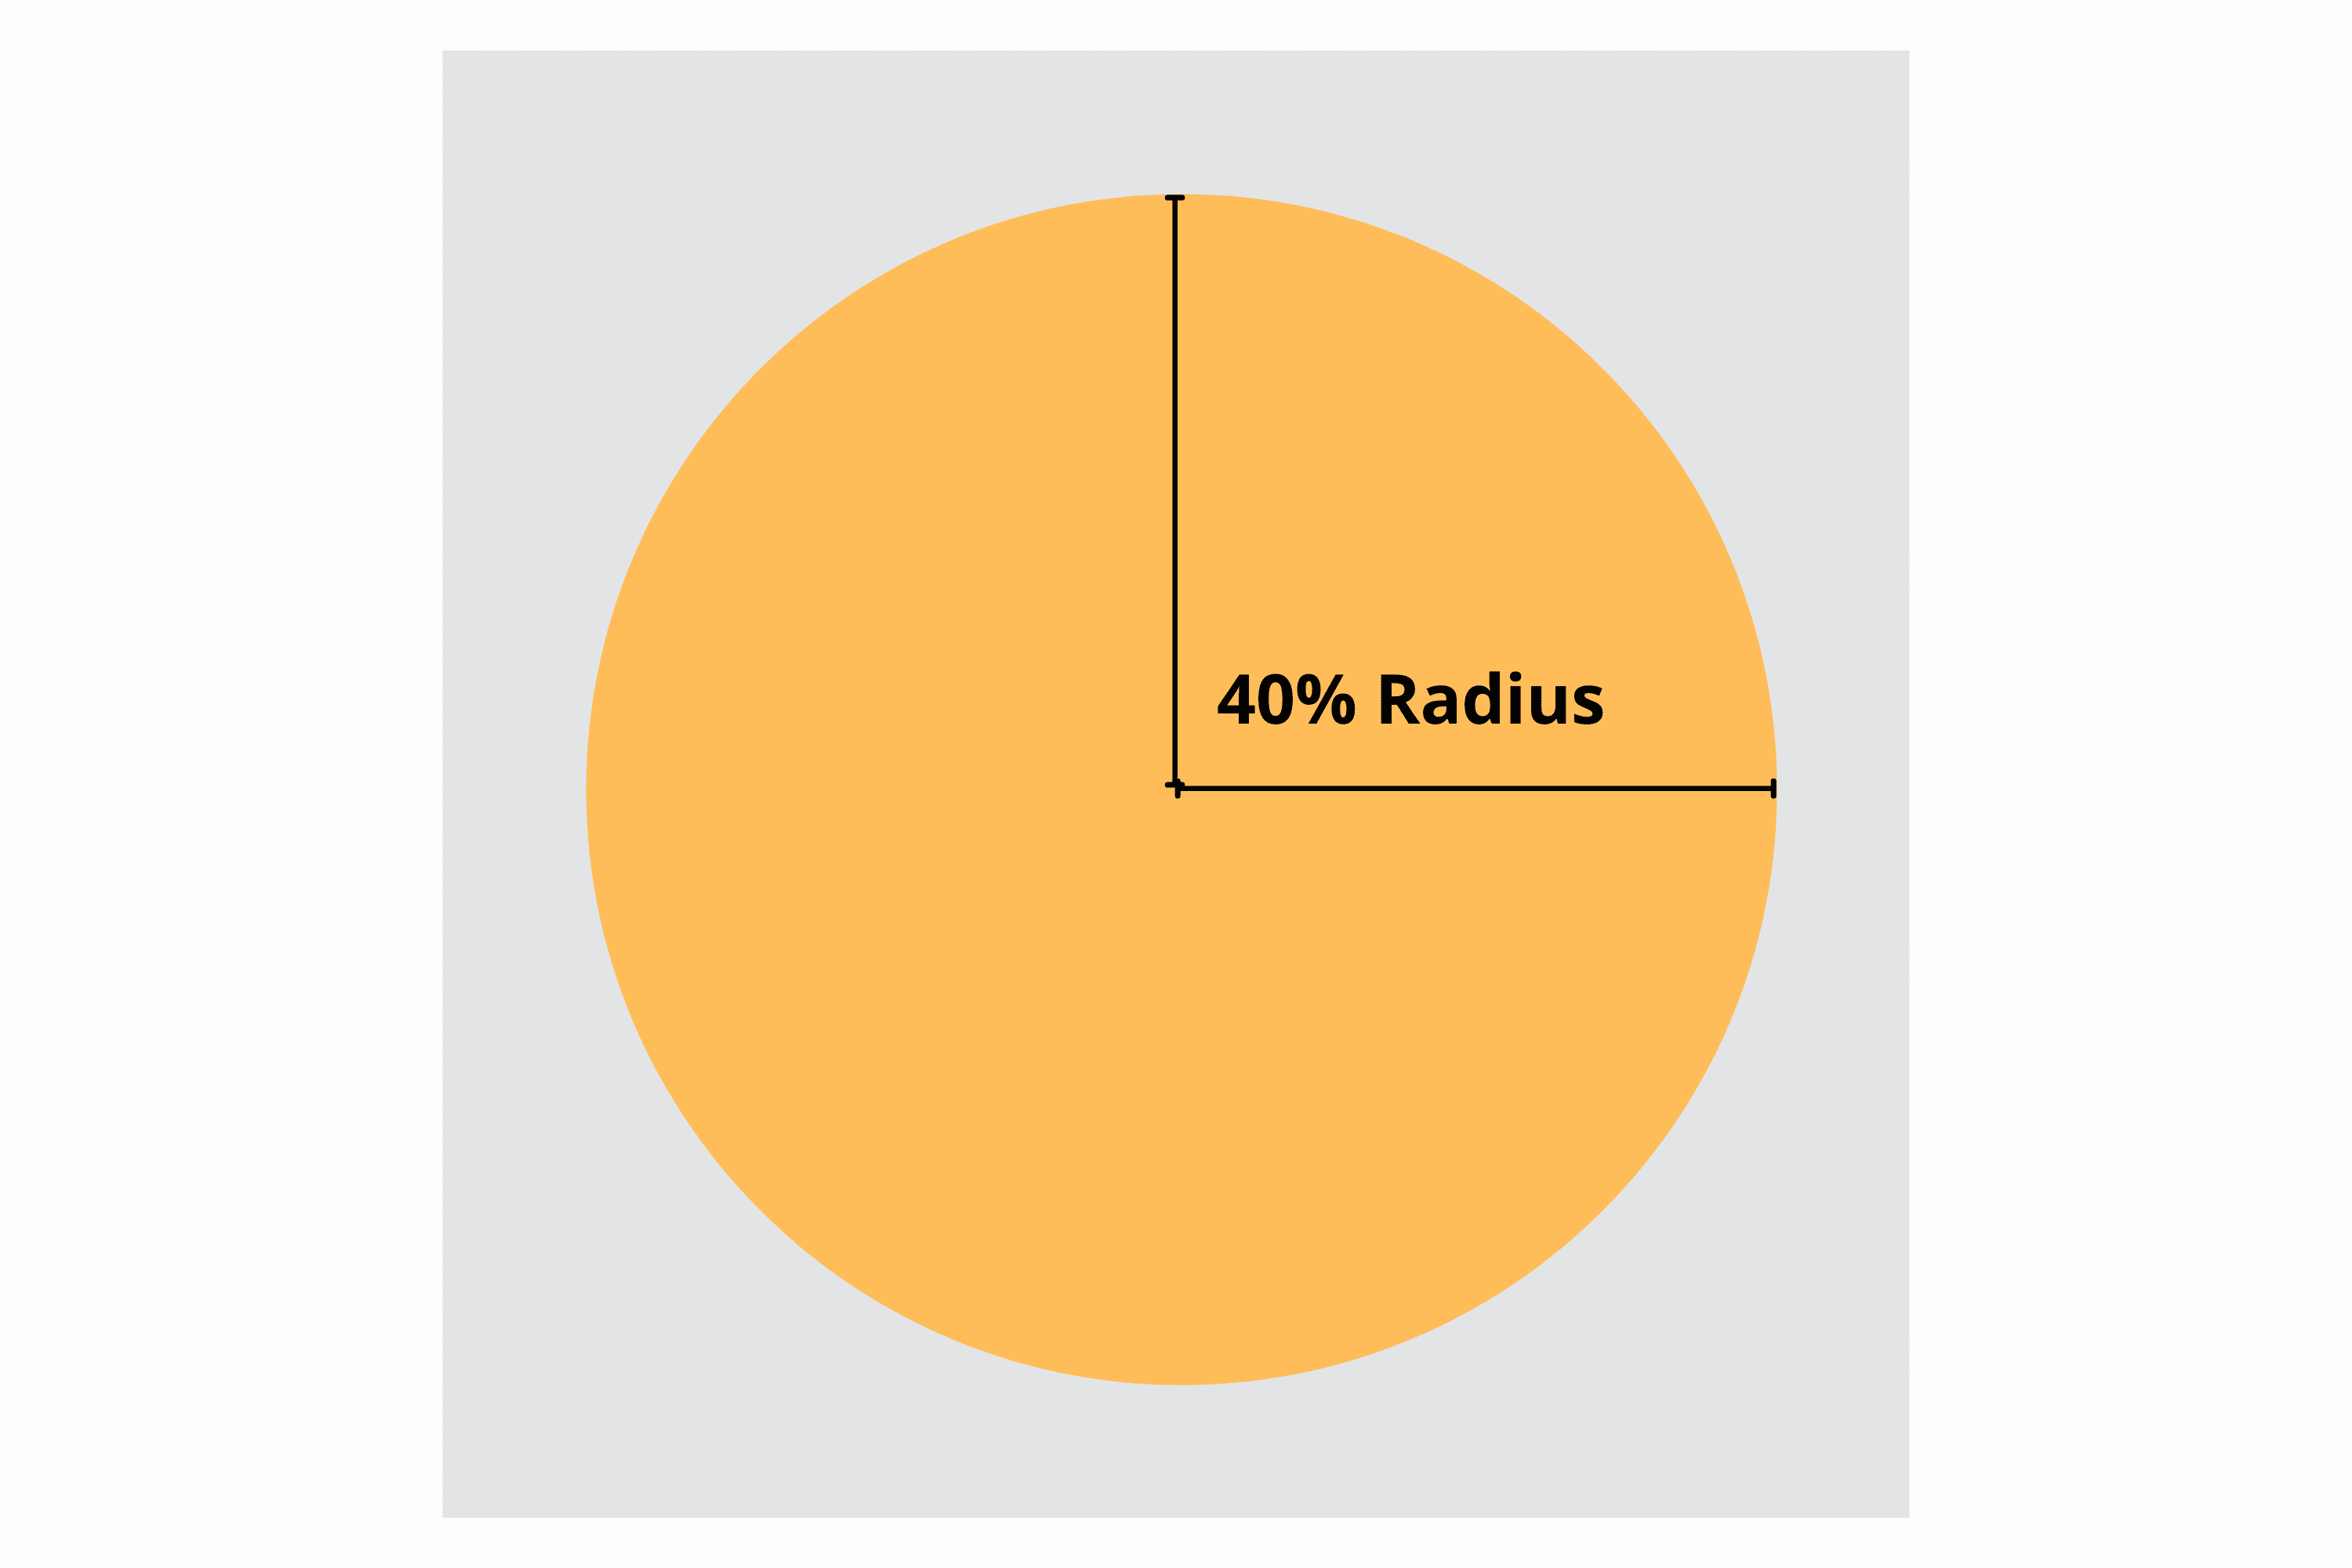 Безопасная зона обозначена как окружность с радиусом 40 процентов внутри квадратного значка